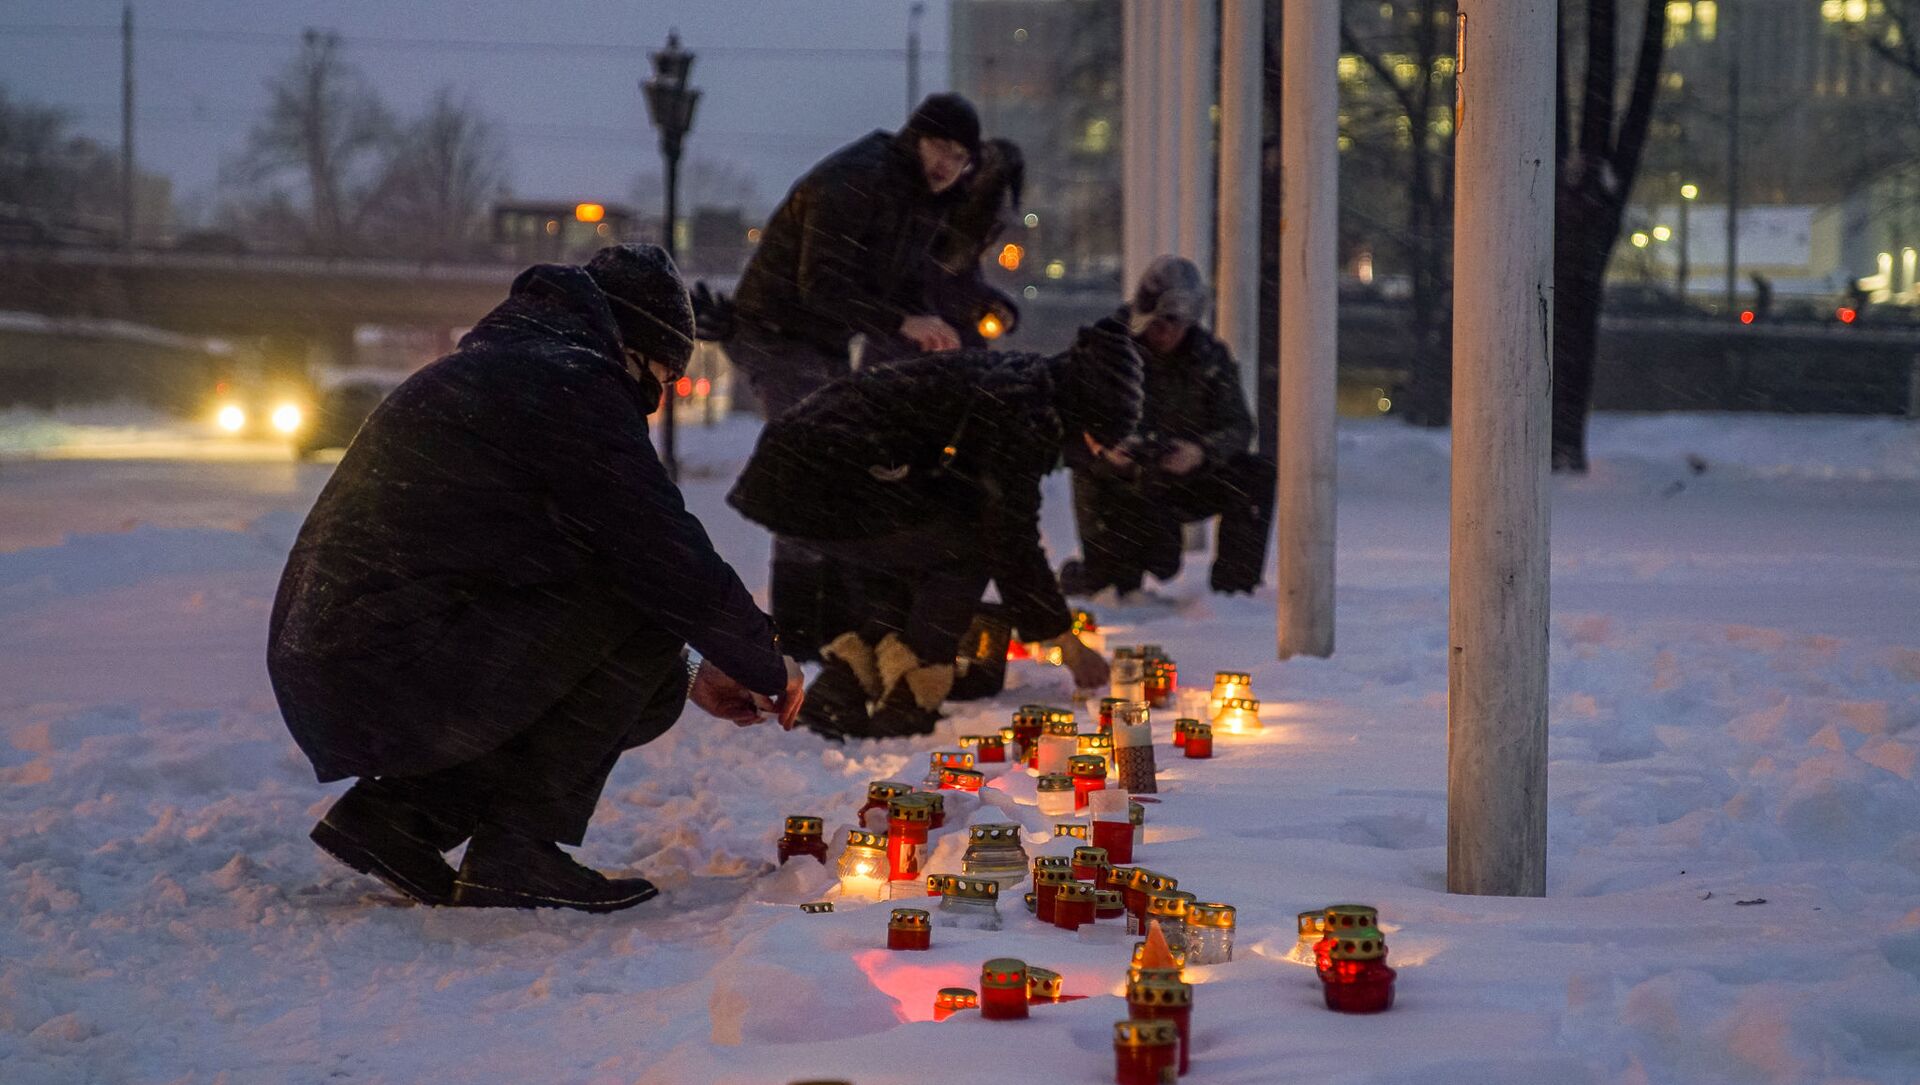 Рижане зажигают свечи у Рижского замка, обращая внимание президента Латвии на трудное положение населения страны из-за введенных ограничений в связи с пандемией COVID-19 - Sputnik Латвия, 1920, 11.02.2021